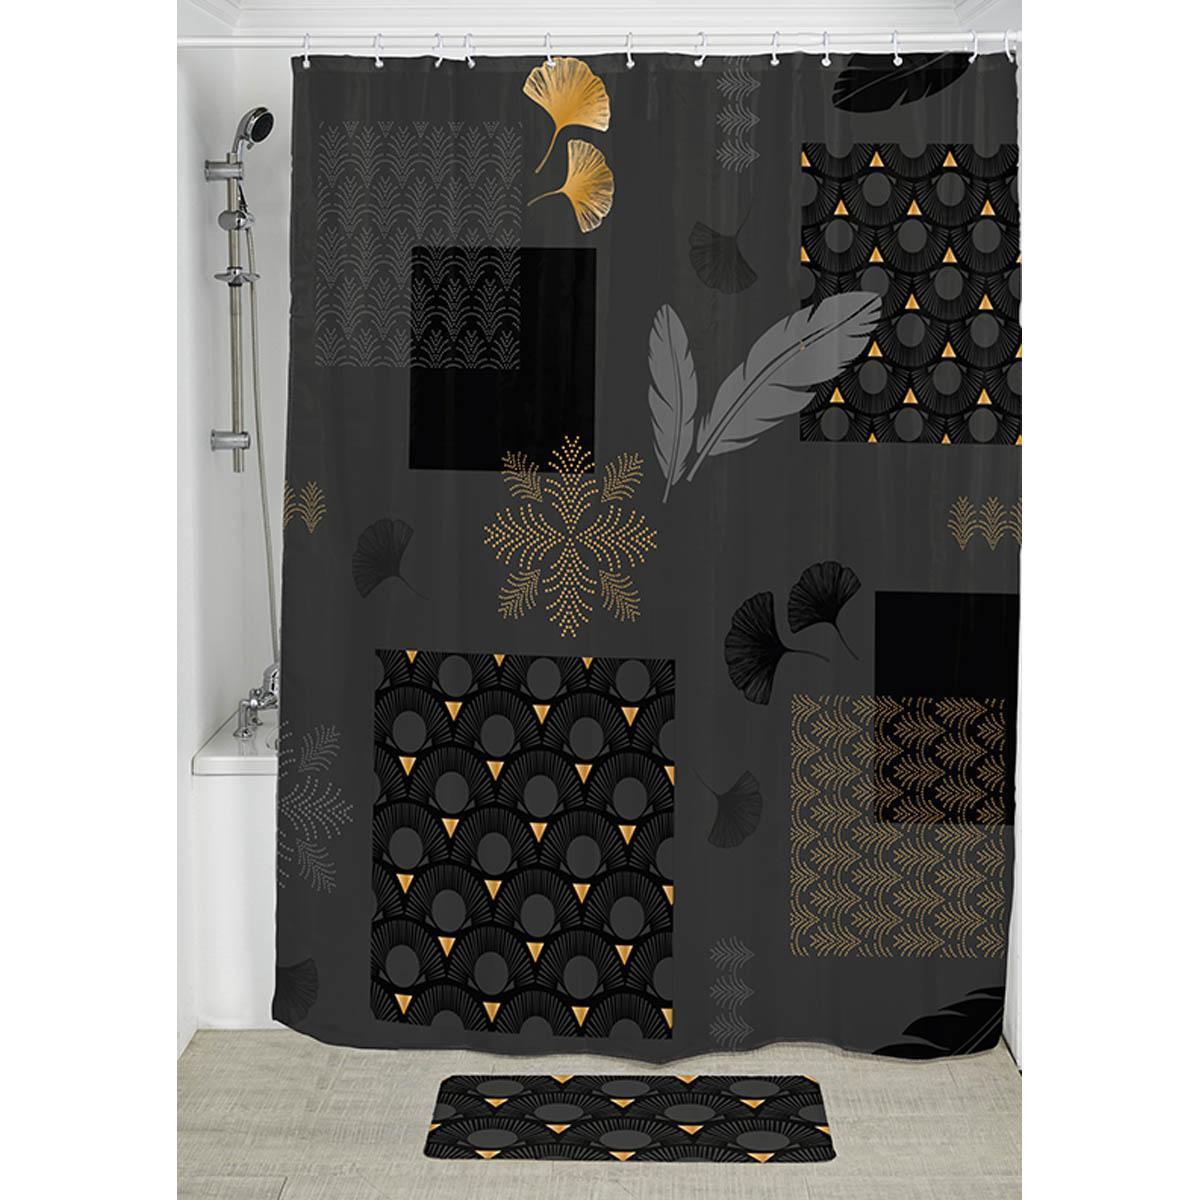 Rideau de douche motifs - 180 x L 200 cm - Noir